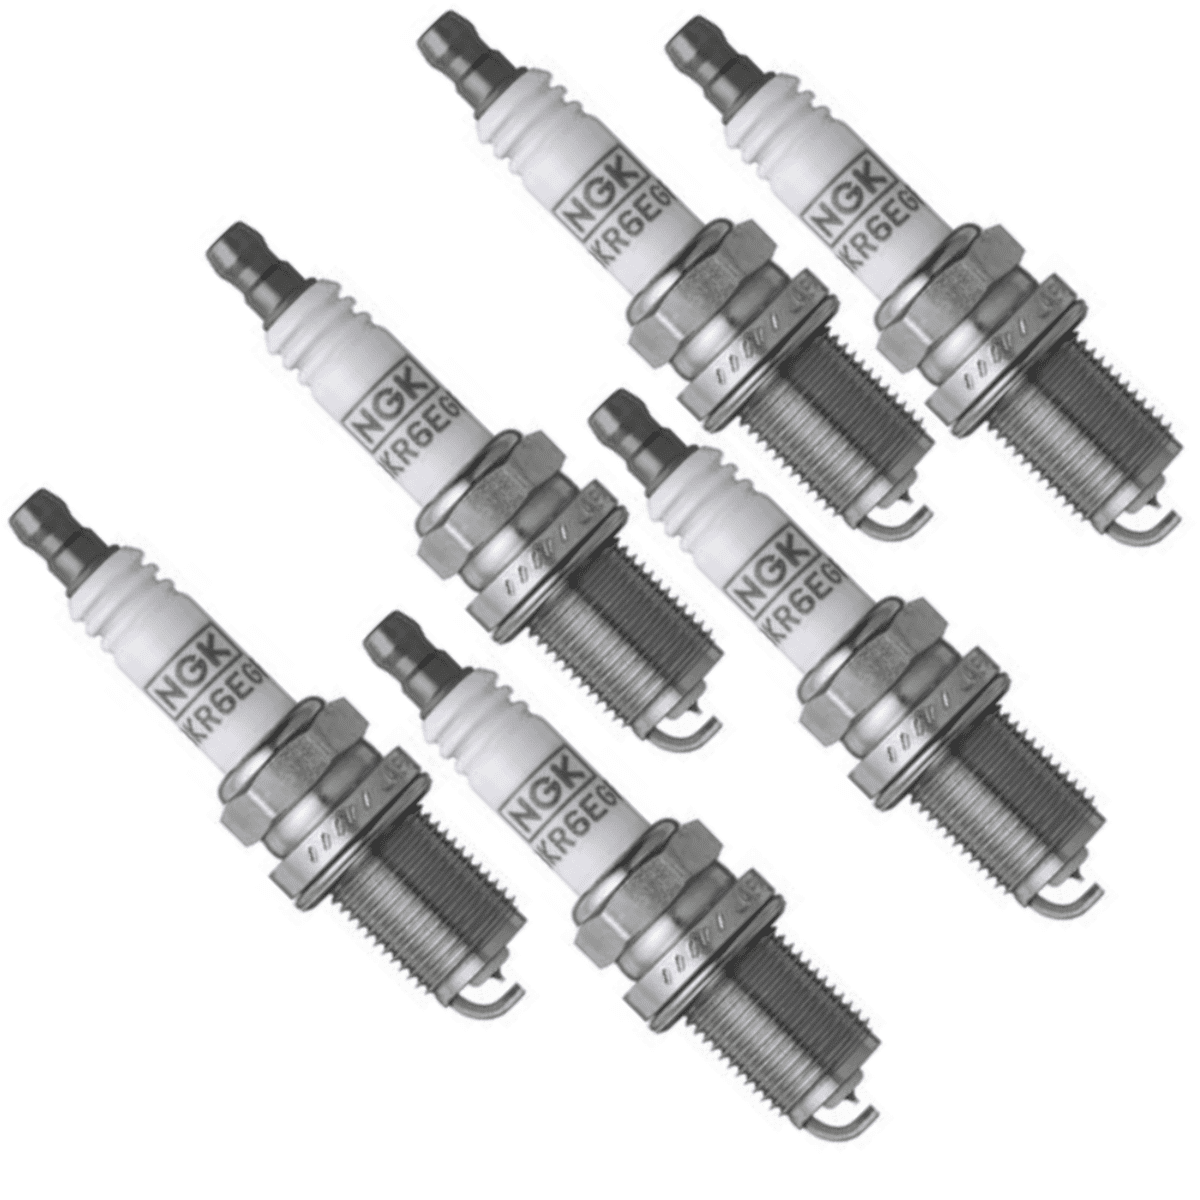 Set of 6 NGK "PLATINUM" Spark Plugs for 2005-2016 Nissan Frontier 4.0L V6 